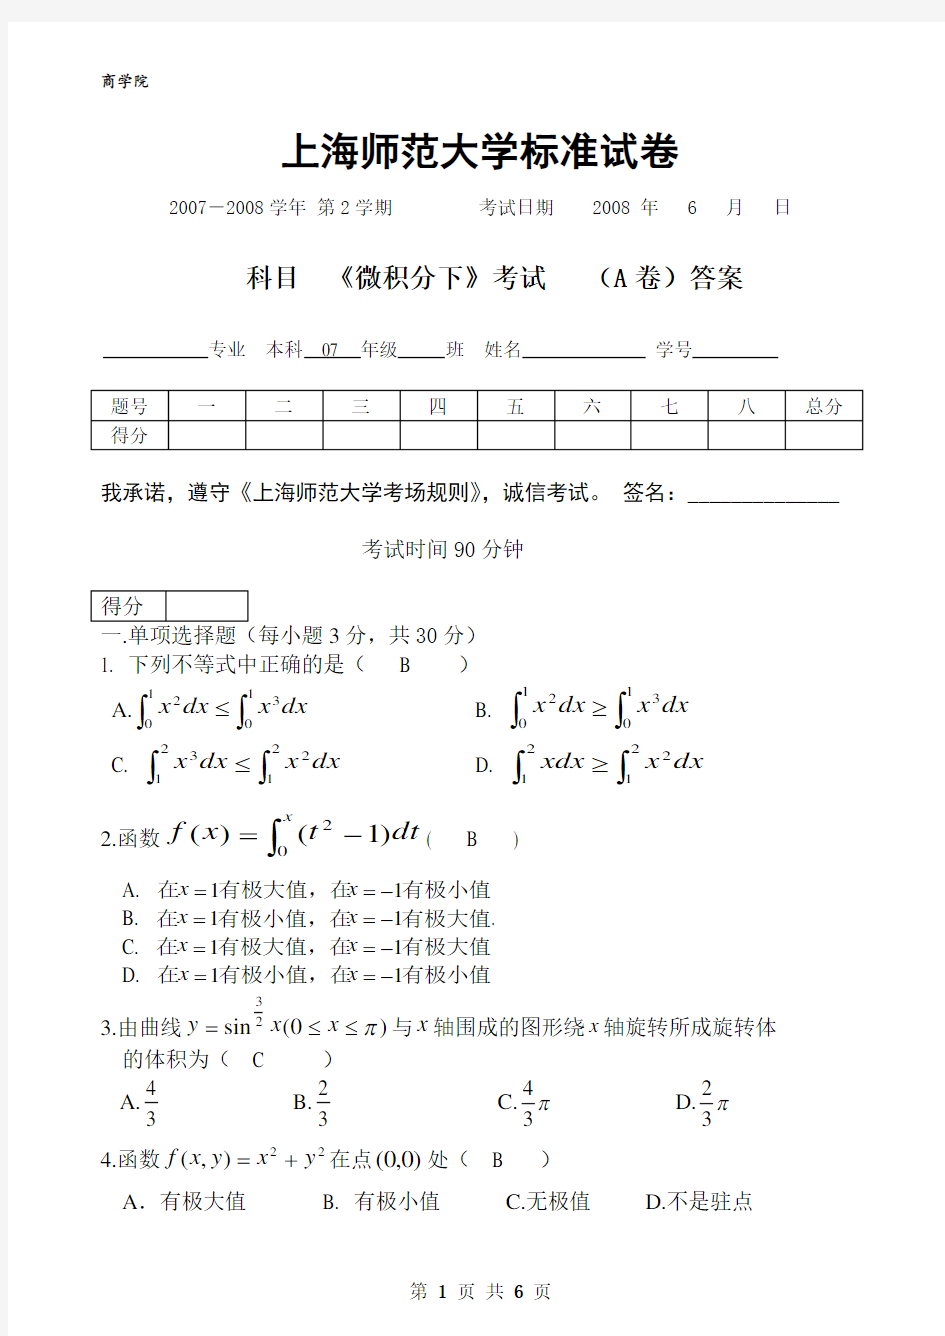 (完整)上海师范大学高数试题(14)